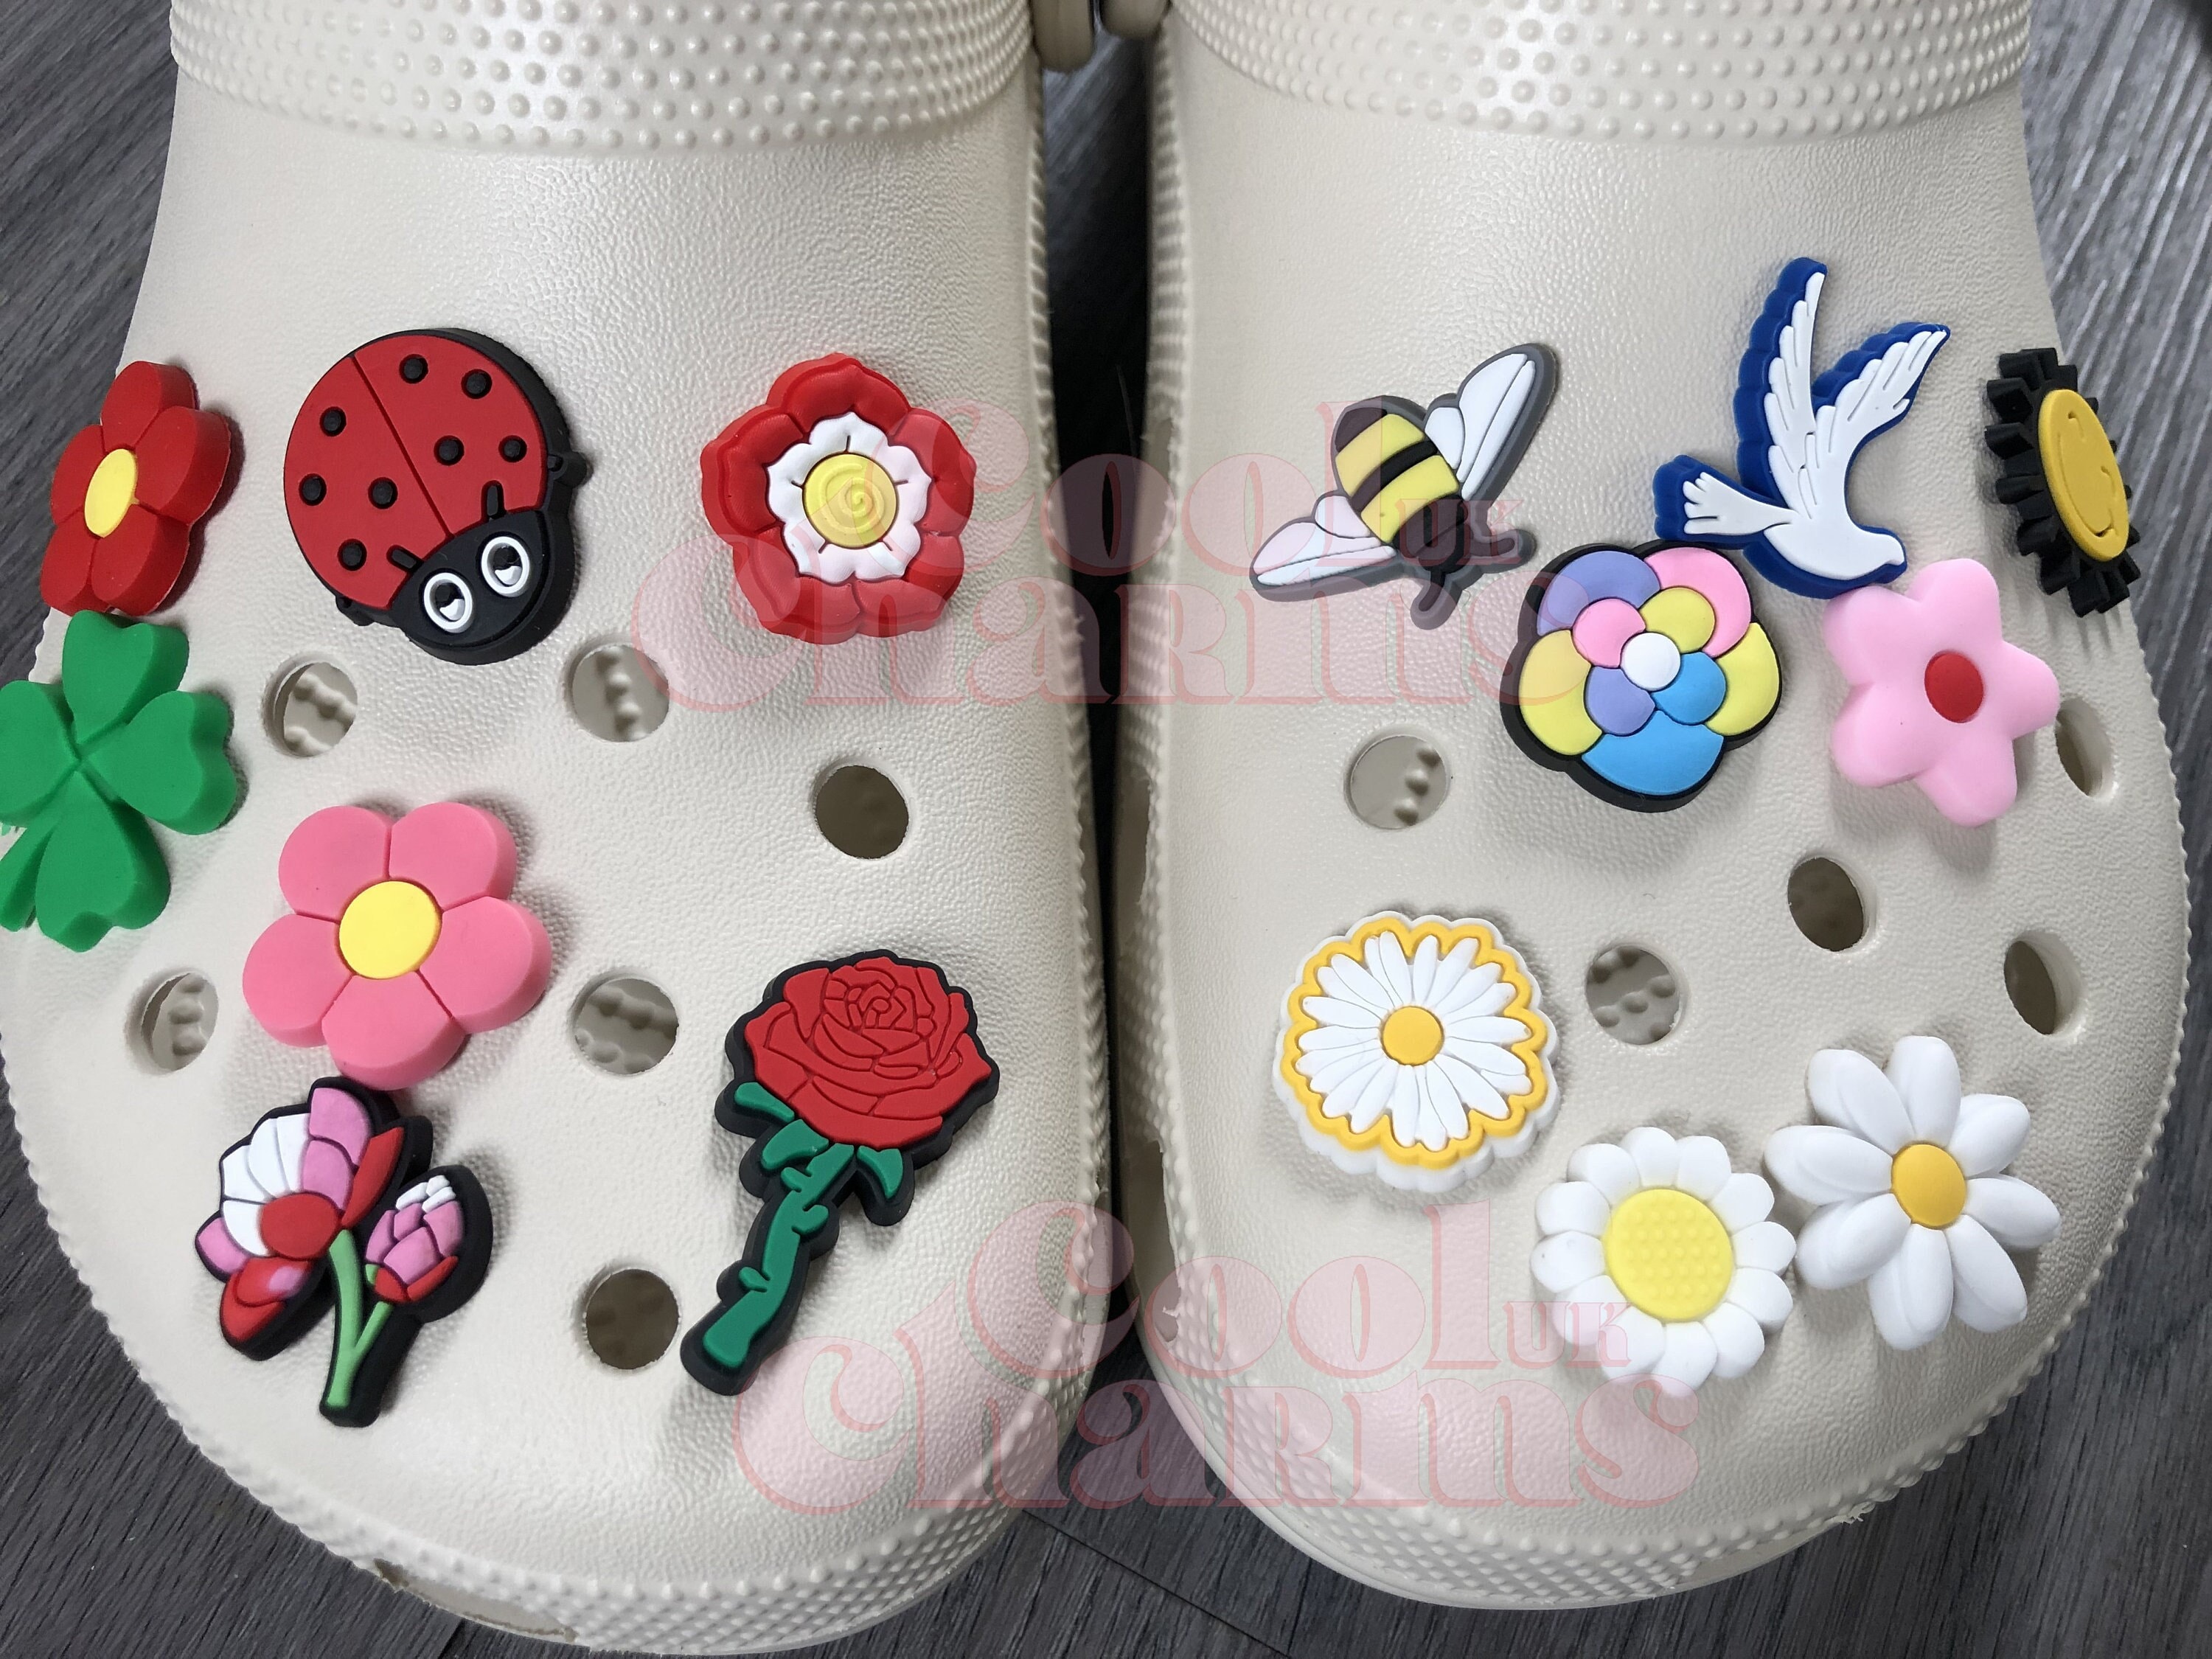 croc shoes charms kit cute carton 12pcs ice cream Accessories jibz for croc  clogs shoe Decorations